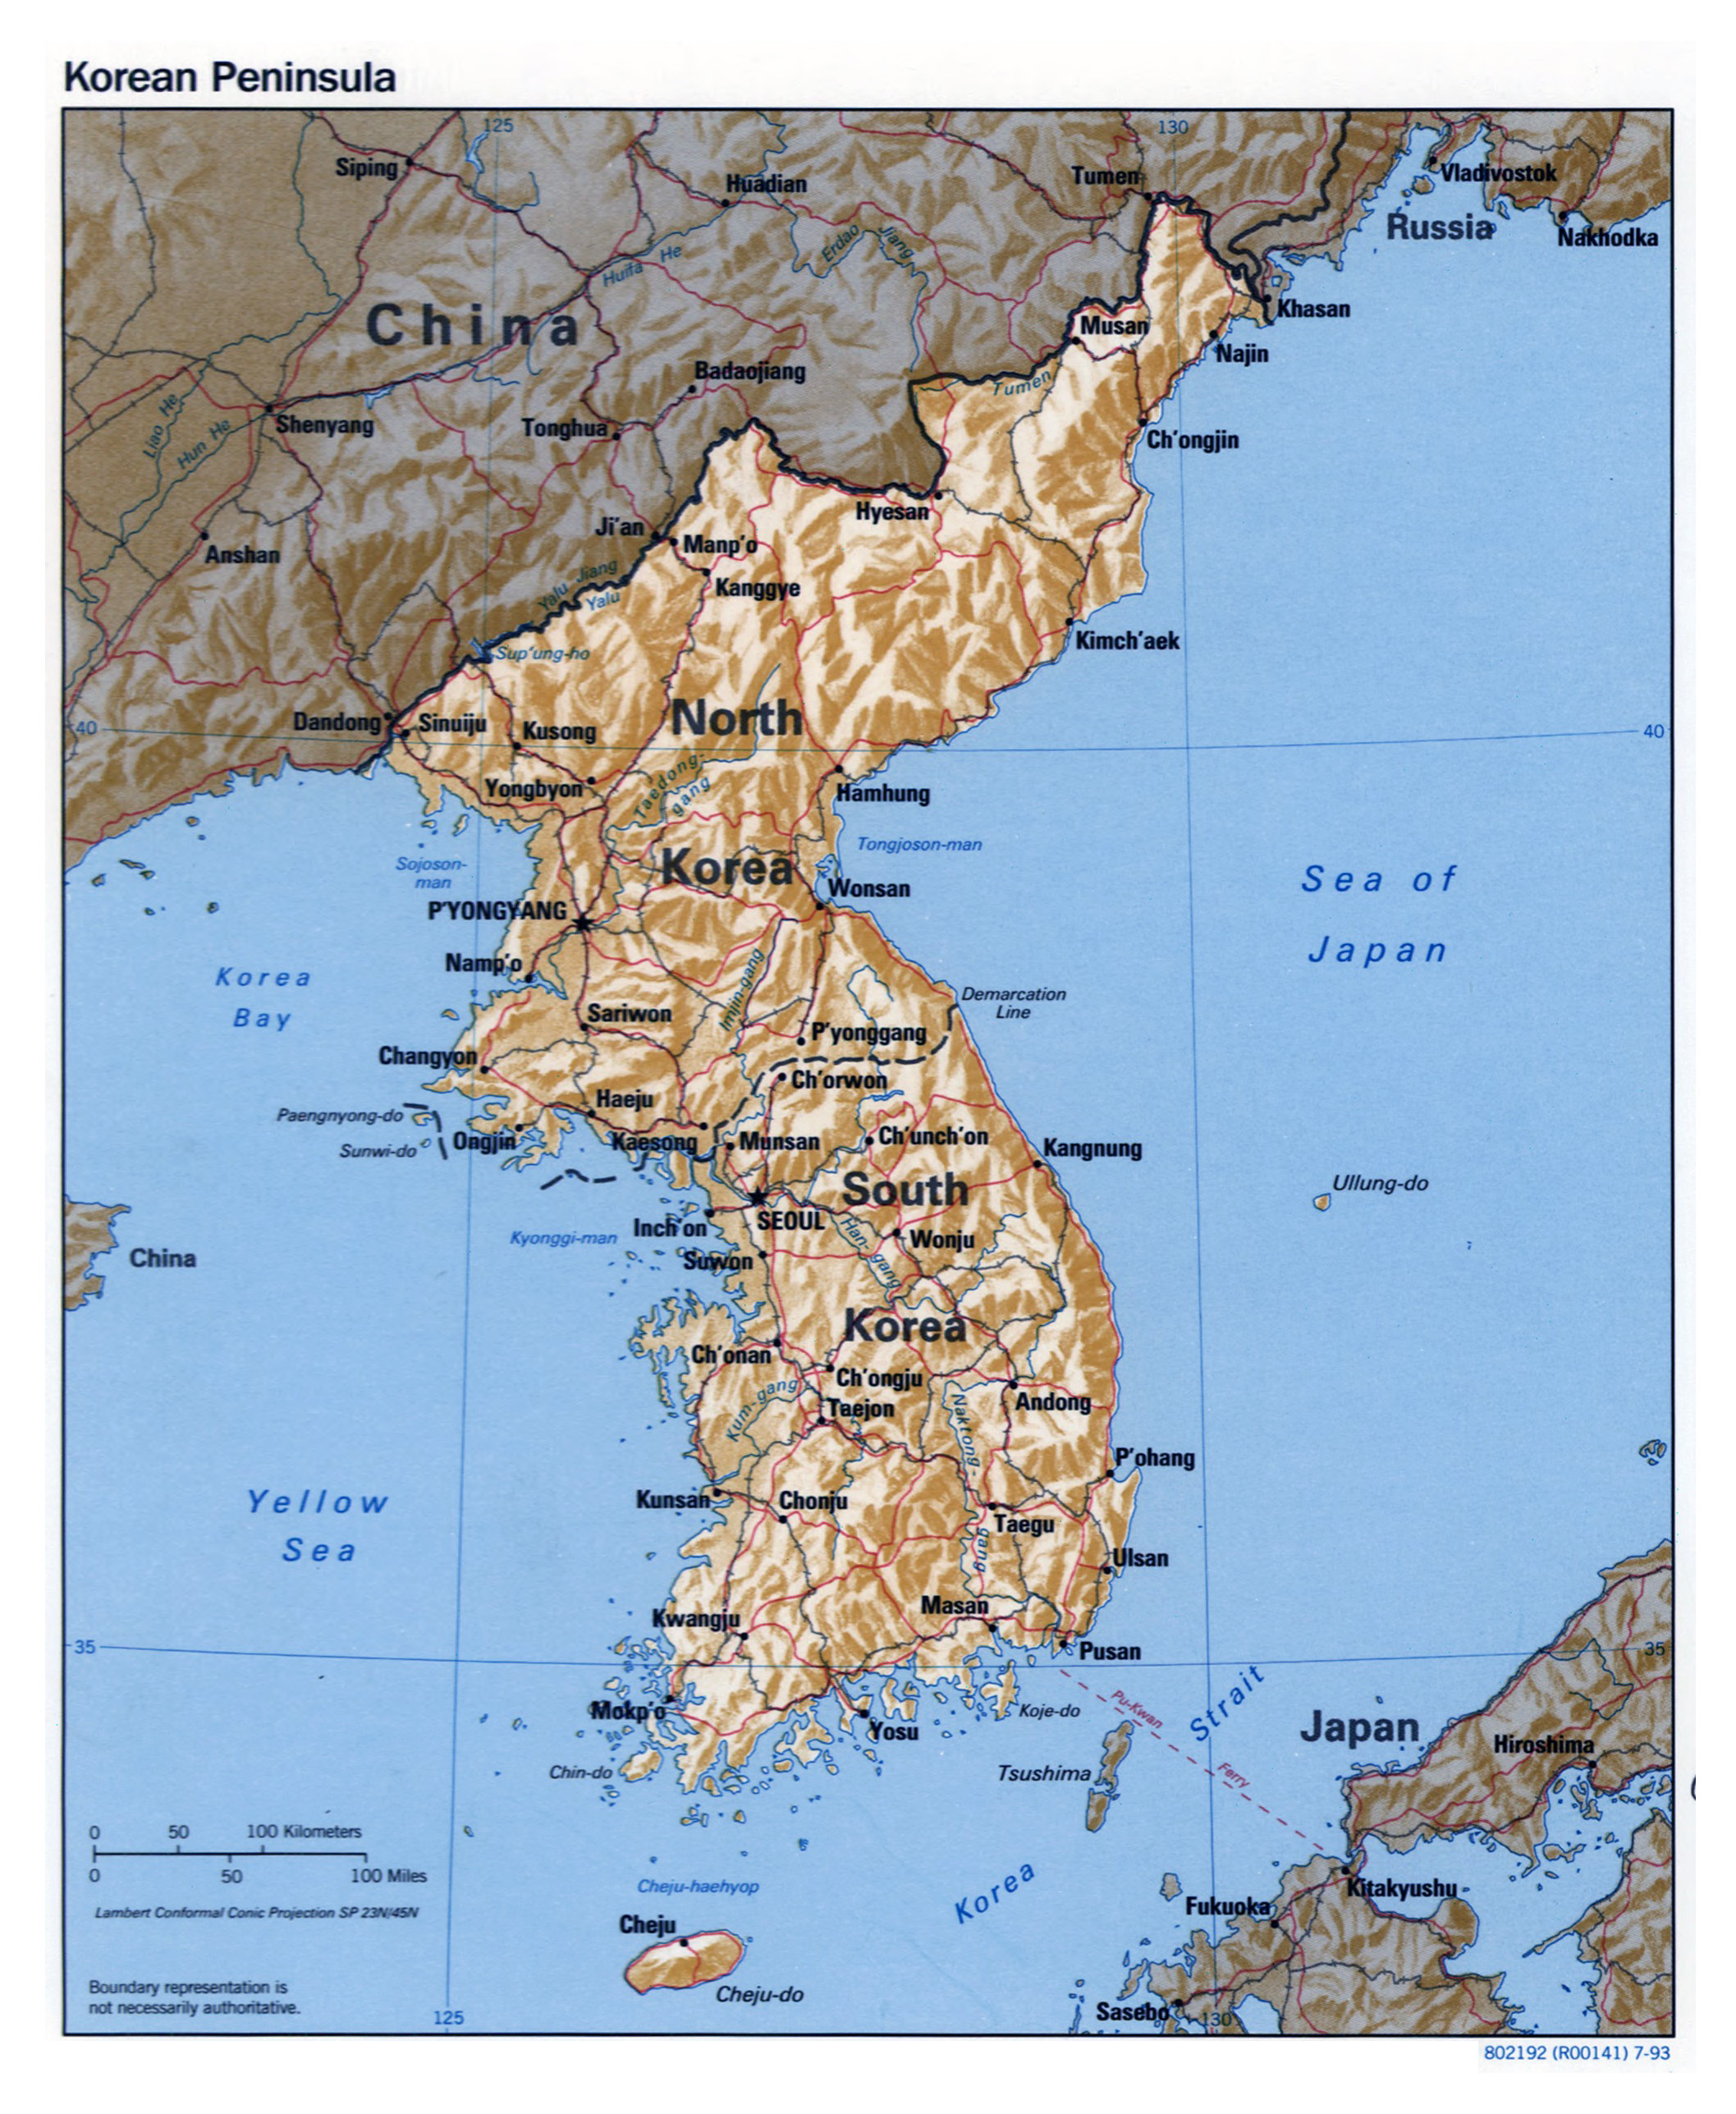 Grande detallado mapa político de la Península de Corea